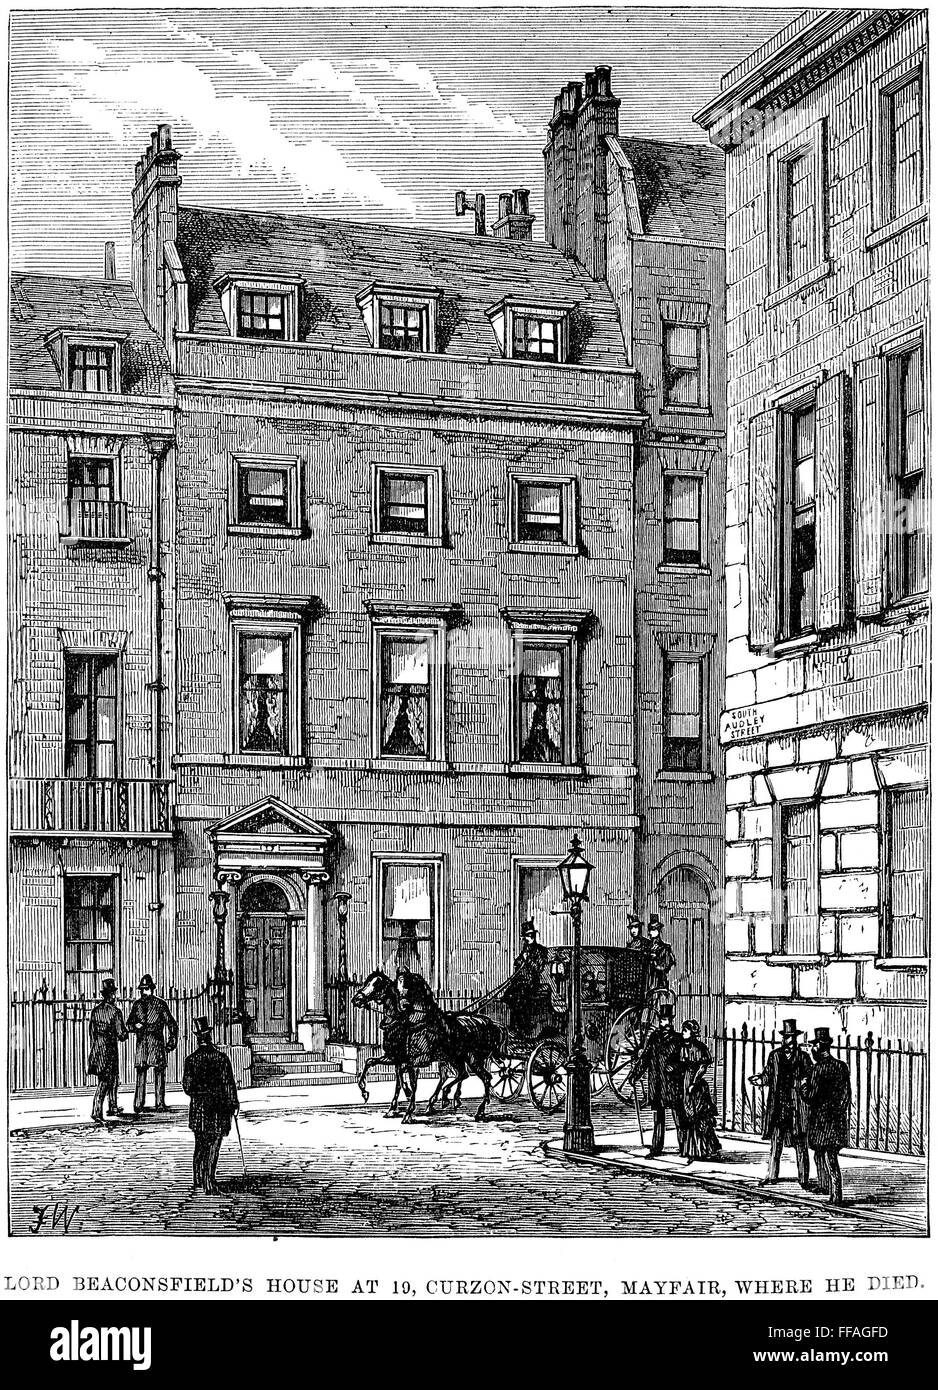 Benjamín Disraeli /n(1804-1881). 1º conde de Beaconsfield. Estadista y escritor inglés. "Lord Beaconsfield's House at 10, Curzon-Street, Mayfair, donde murió." El grabado en madera de un periódico inglés de 1881. Foto de stock